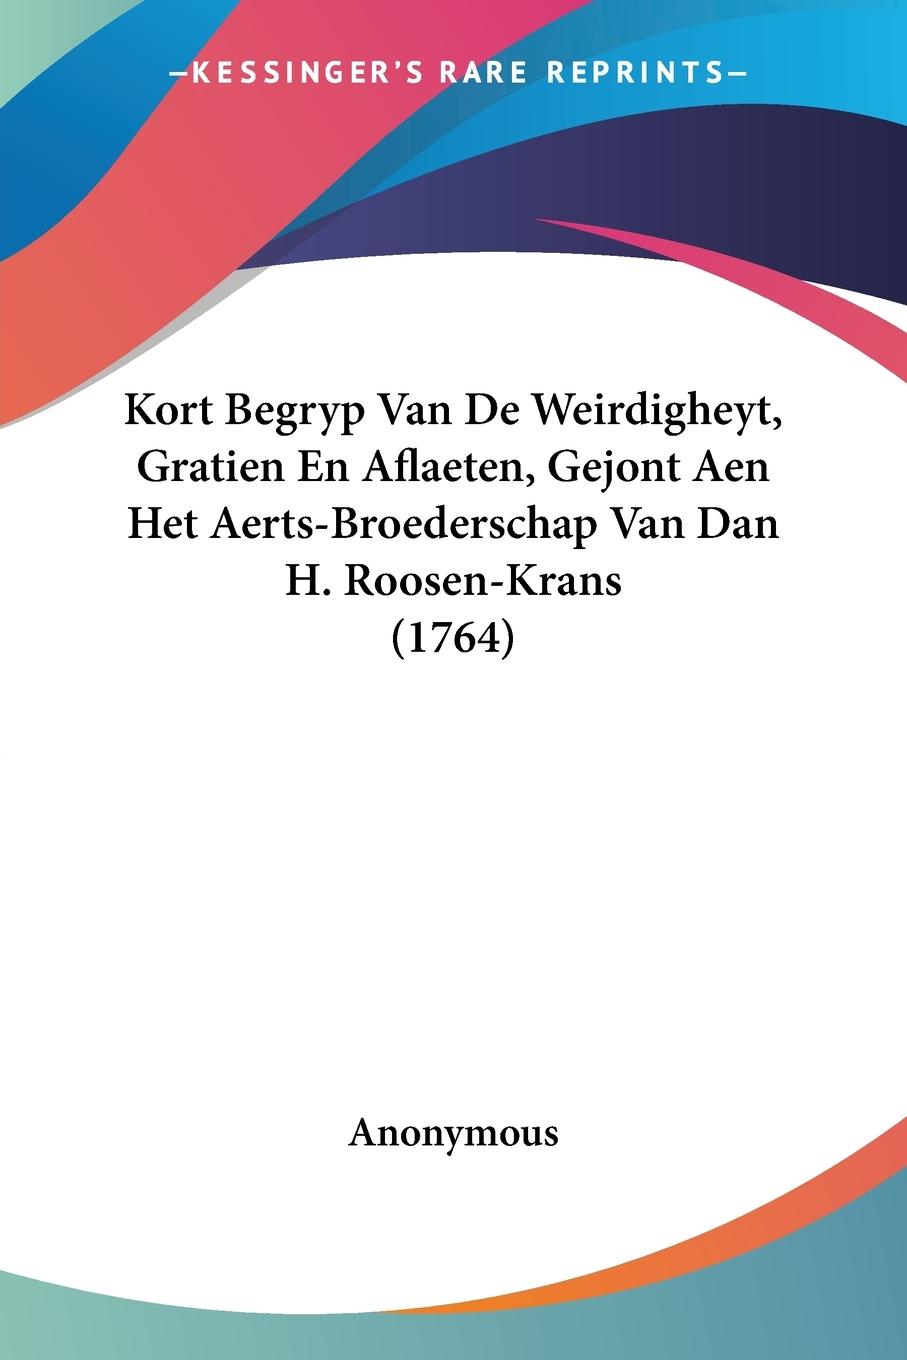 Kort Begryp Van De Weirdigheyt, Gratien En Aflaeten, Gejont Aen Het Aerts-Broederschap Van Dan H. Roosen-Krans (1764) - Anonymous